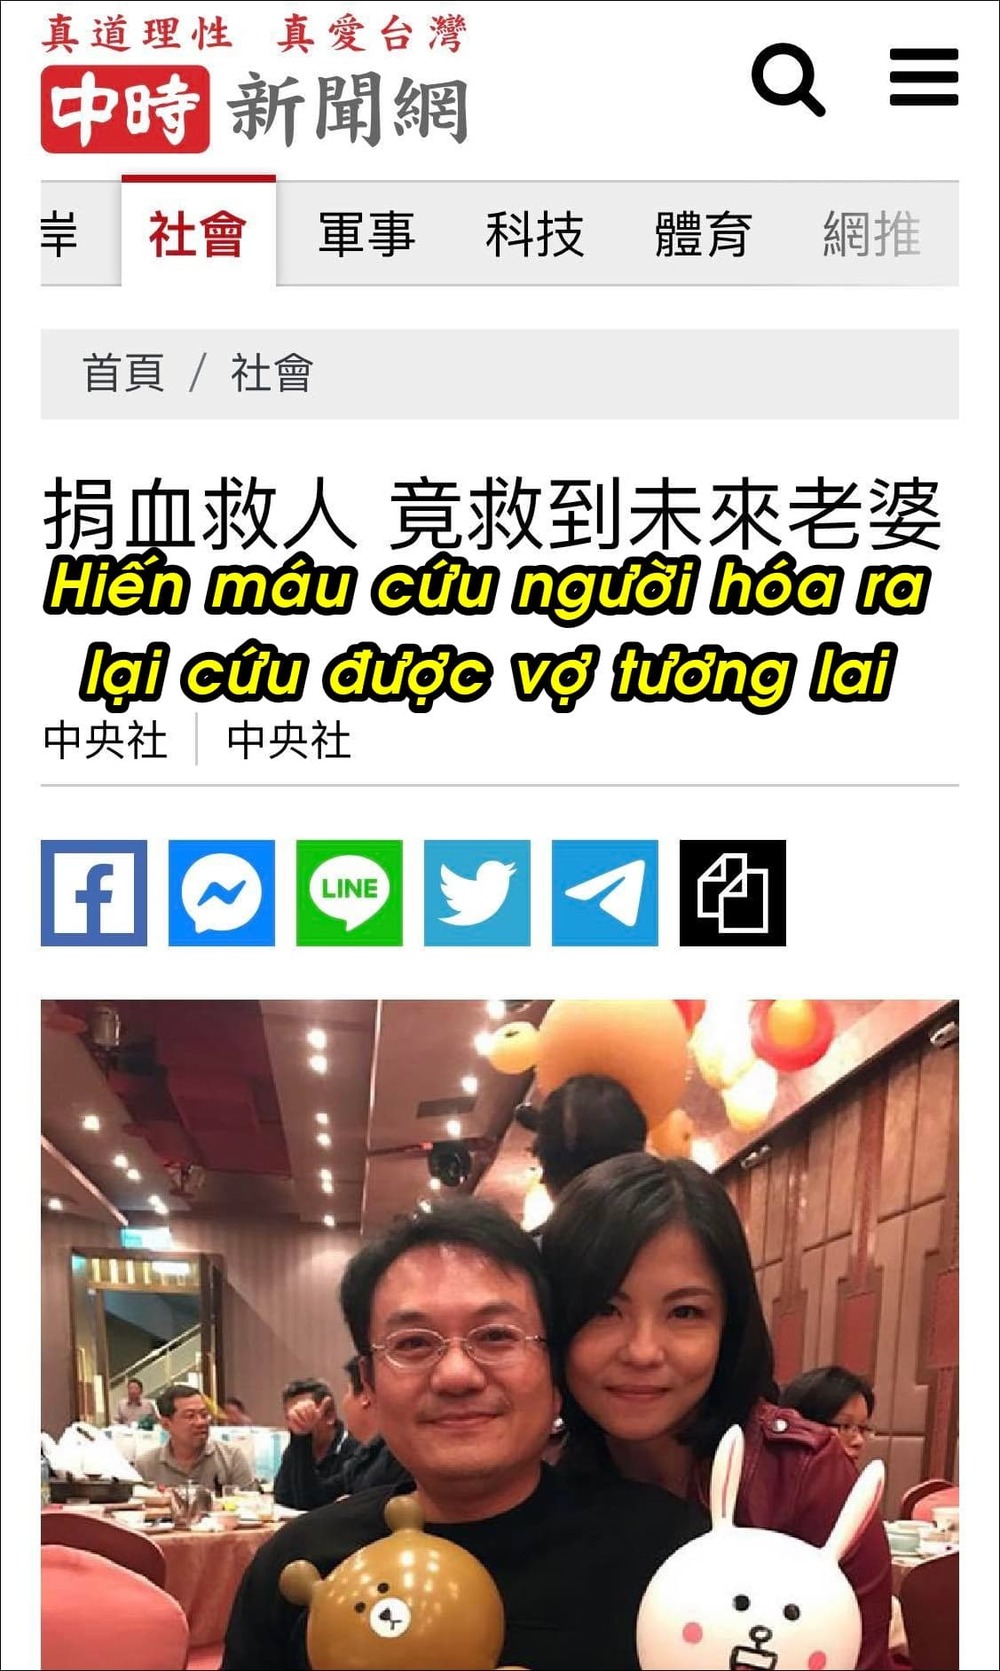  
Câu chuyện đặc biệt của cặp đôi Đài Loan thu hút sự chú ý của mọi người. (Ảnh: Chụp màn hình China Times)